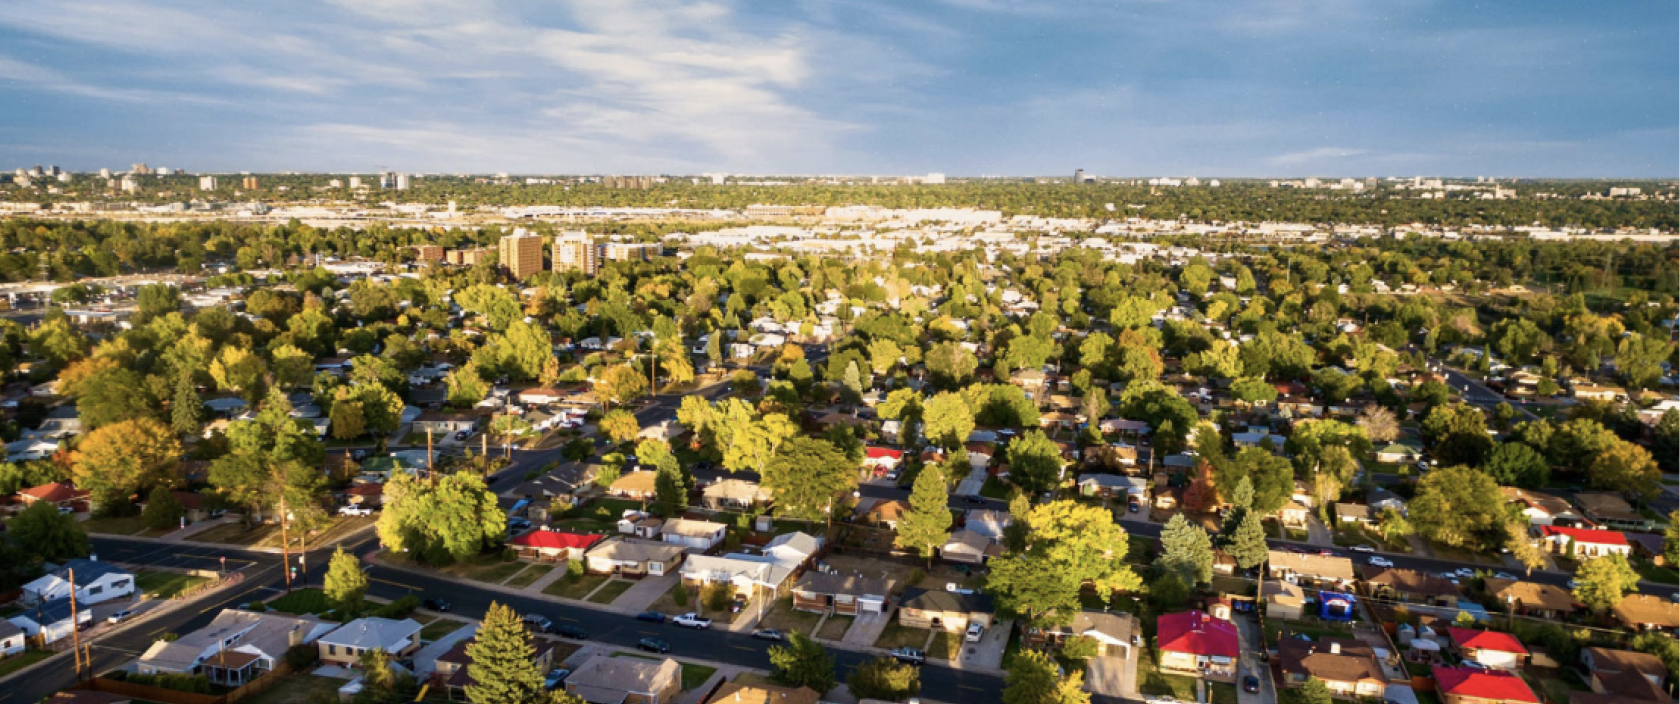 Vue aérienne d’un vaste quartier rempli de maisons, de cours et d’arbres.